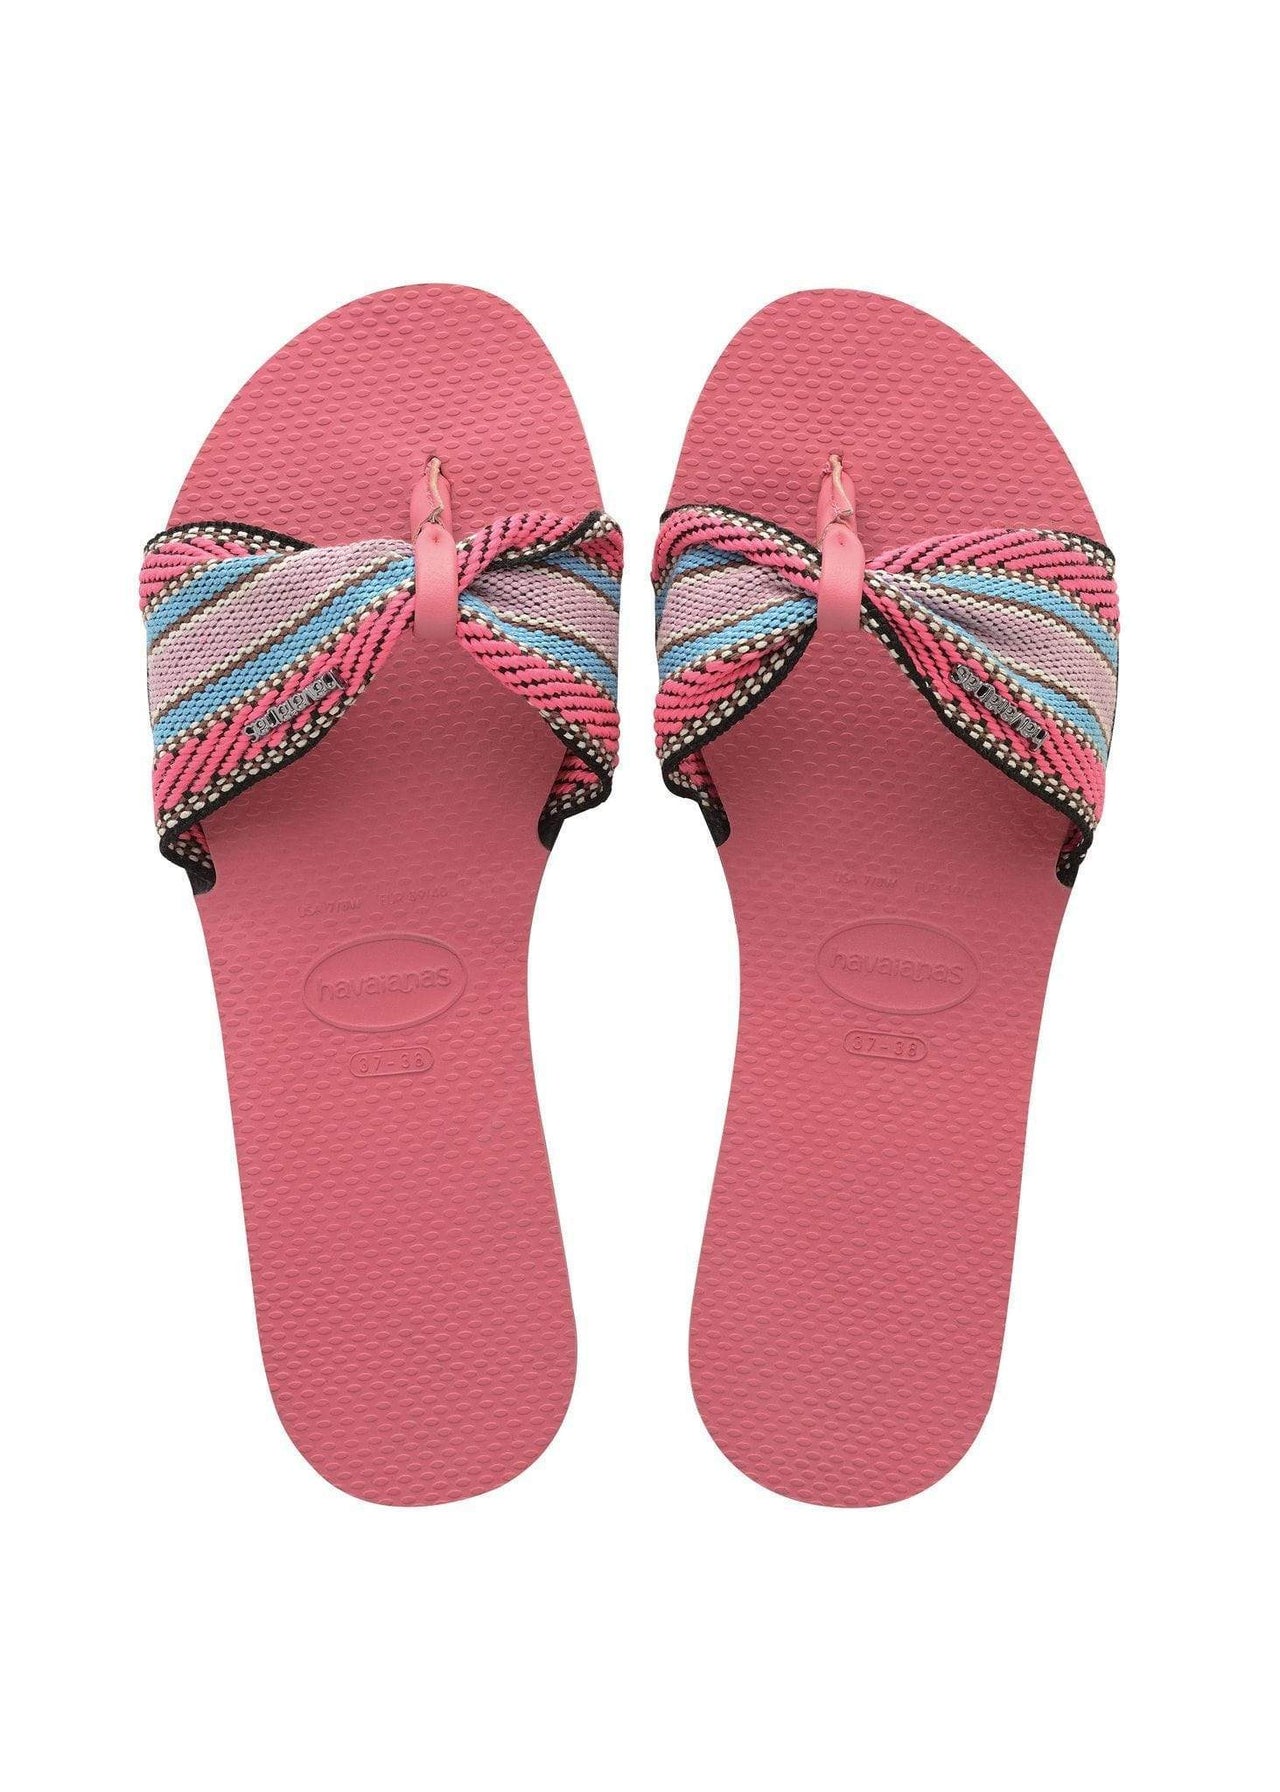 You St Tropez Fita Sandal Porcelain Pink, Flat Shoe by Havaianas | LIT Boutique